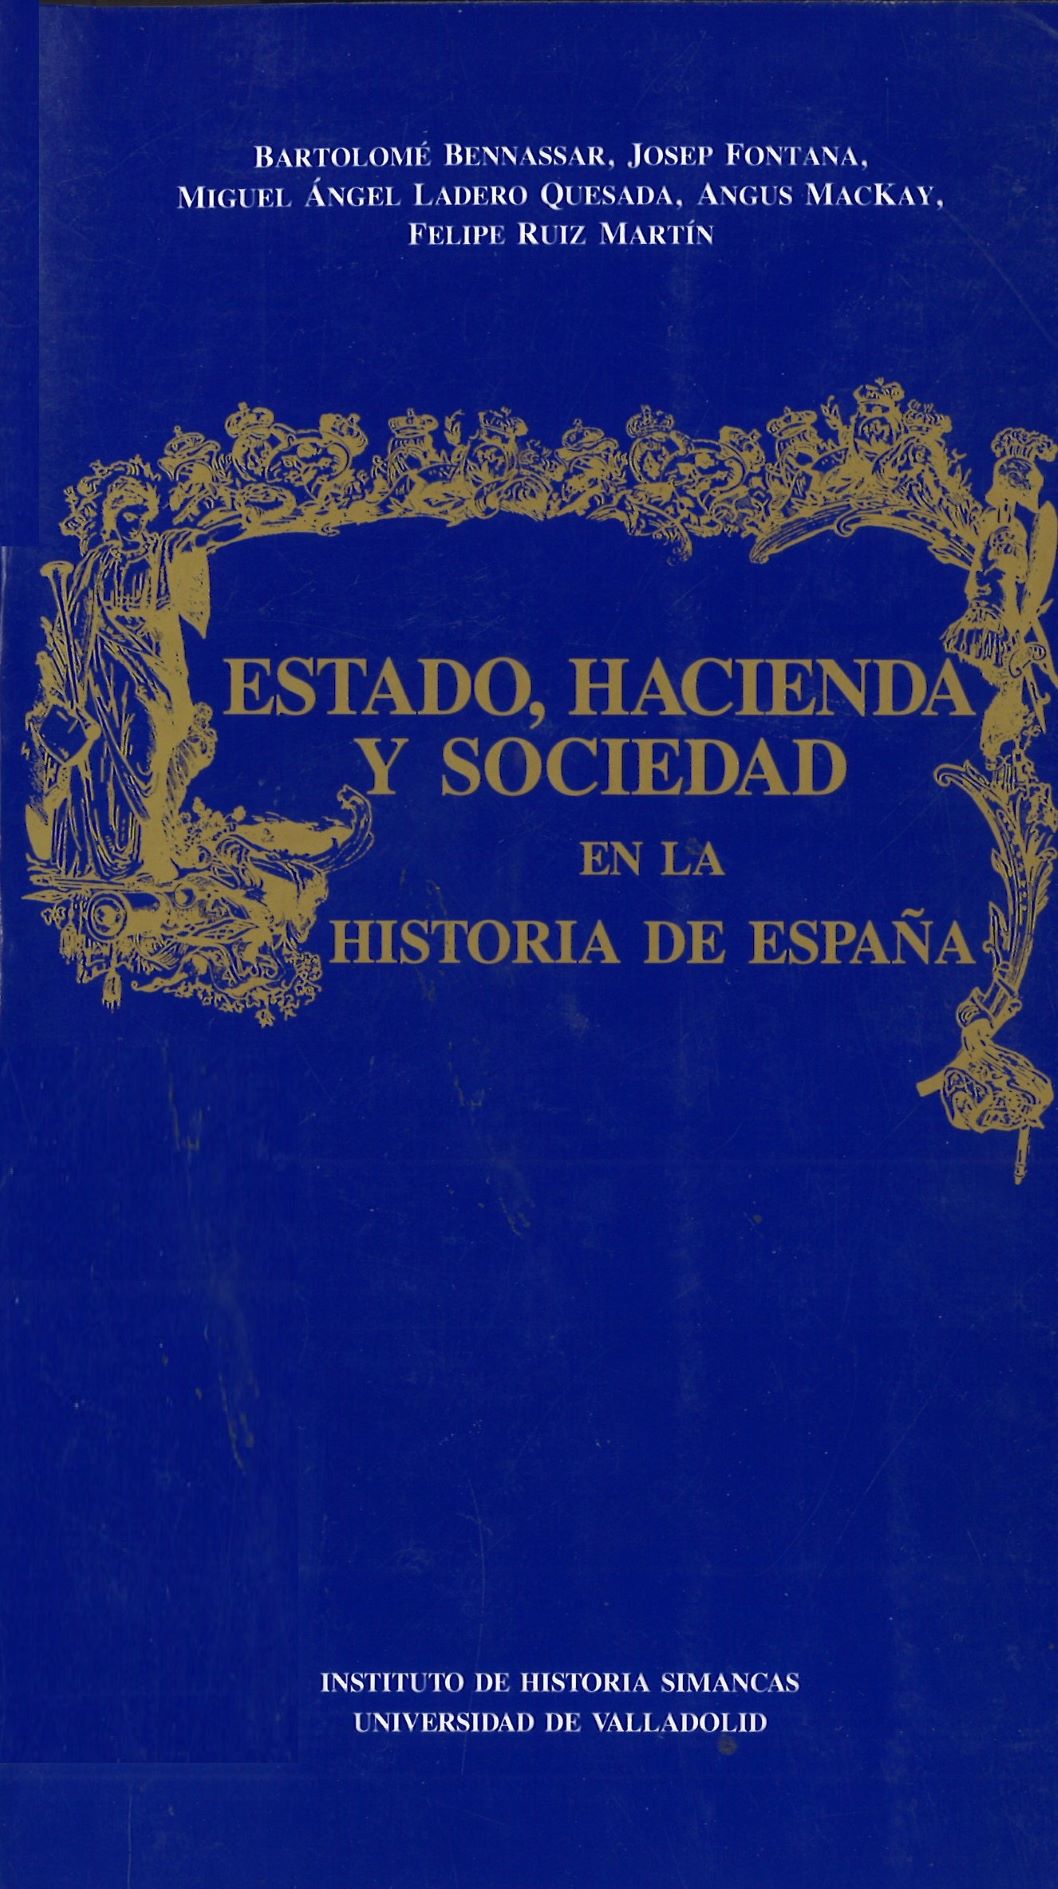 Imagen de portada del libro Estado, Hacienda y sociedad en la historia de España